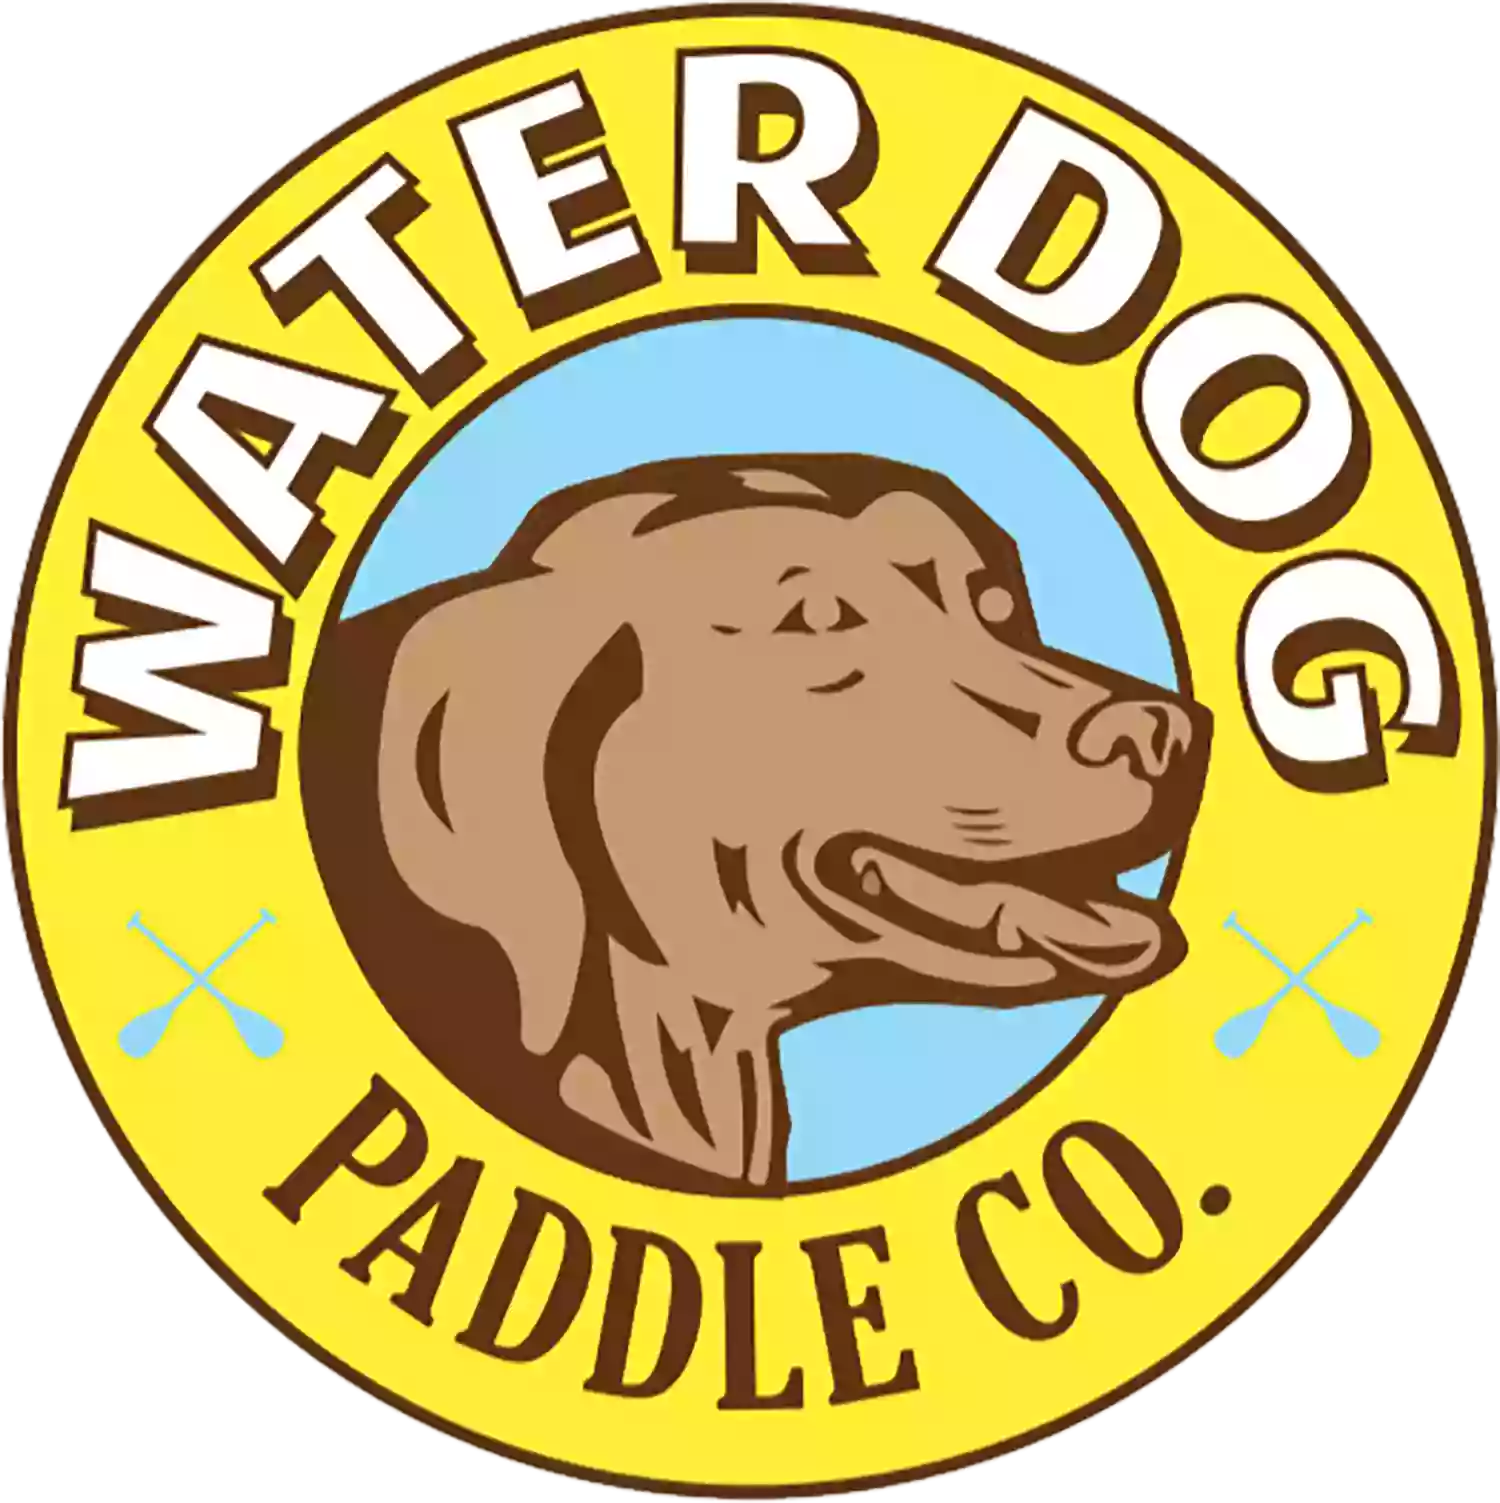 Water Dog Paddle Co. - Ellis Creek